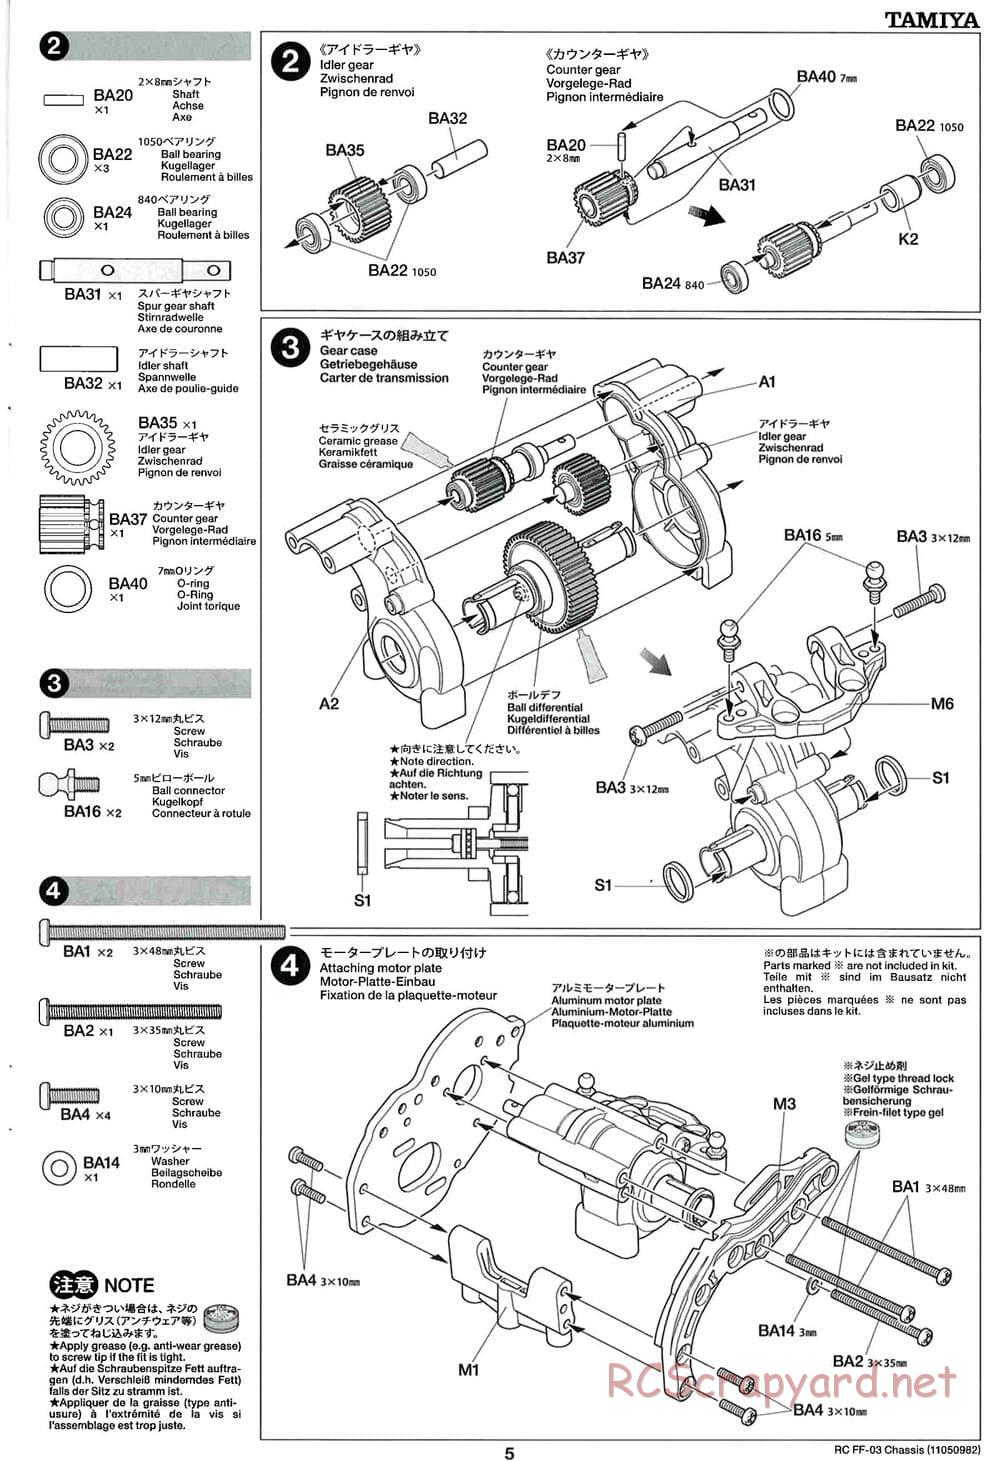 Tamiya - Castrol Honda Civic VTi - FF-03 Chassis - Manual - Page 5